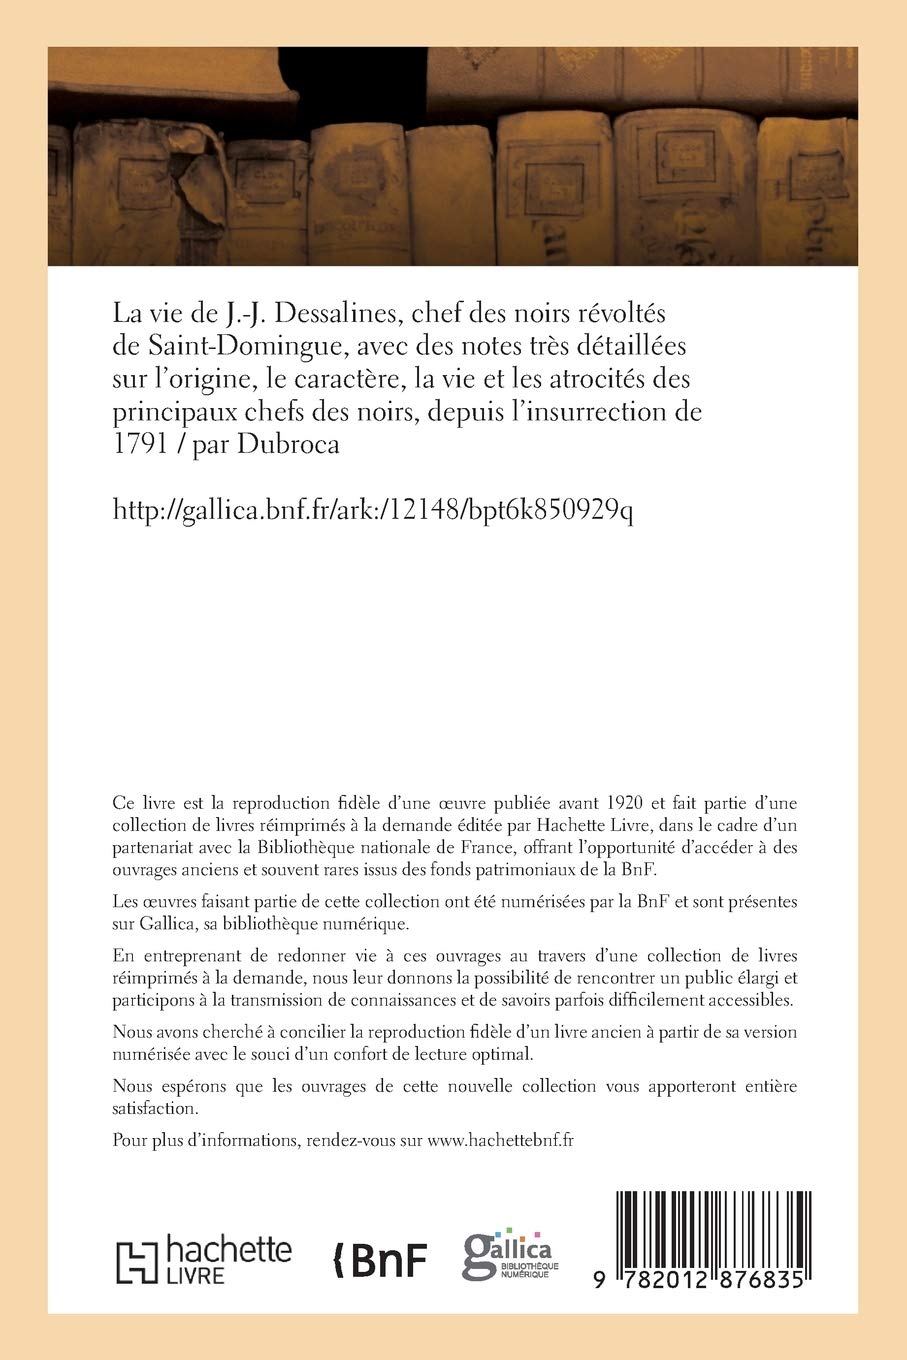 La vie de J.-J. Dessalines, chef des noirs révoltés de Saint-Domingue, avec des notes très (Histoire) (French Edition)